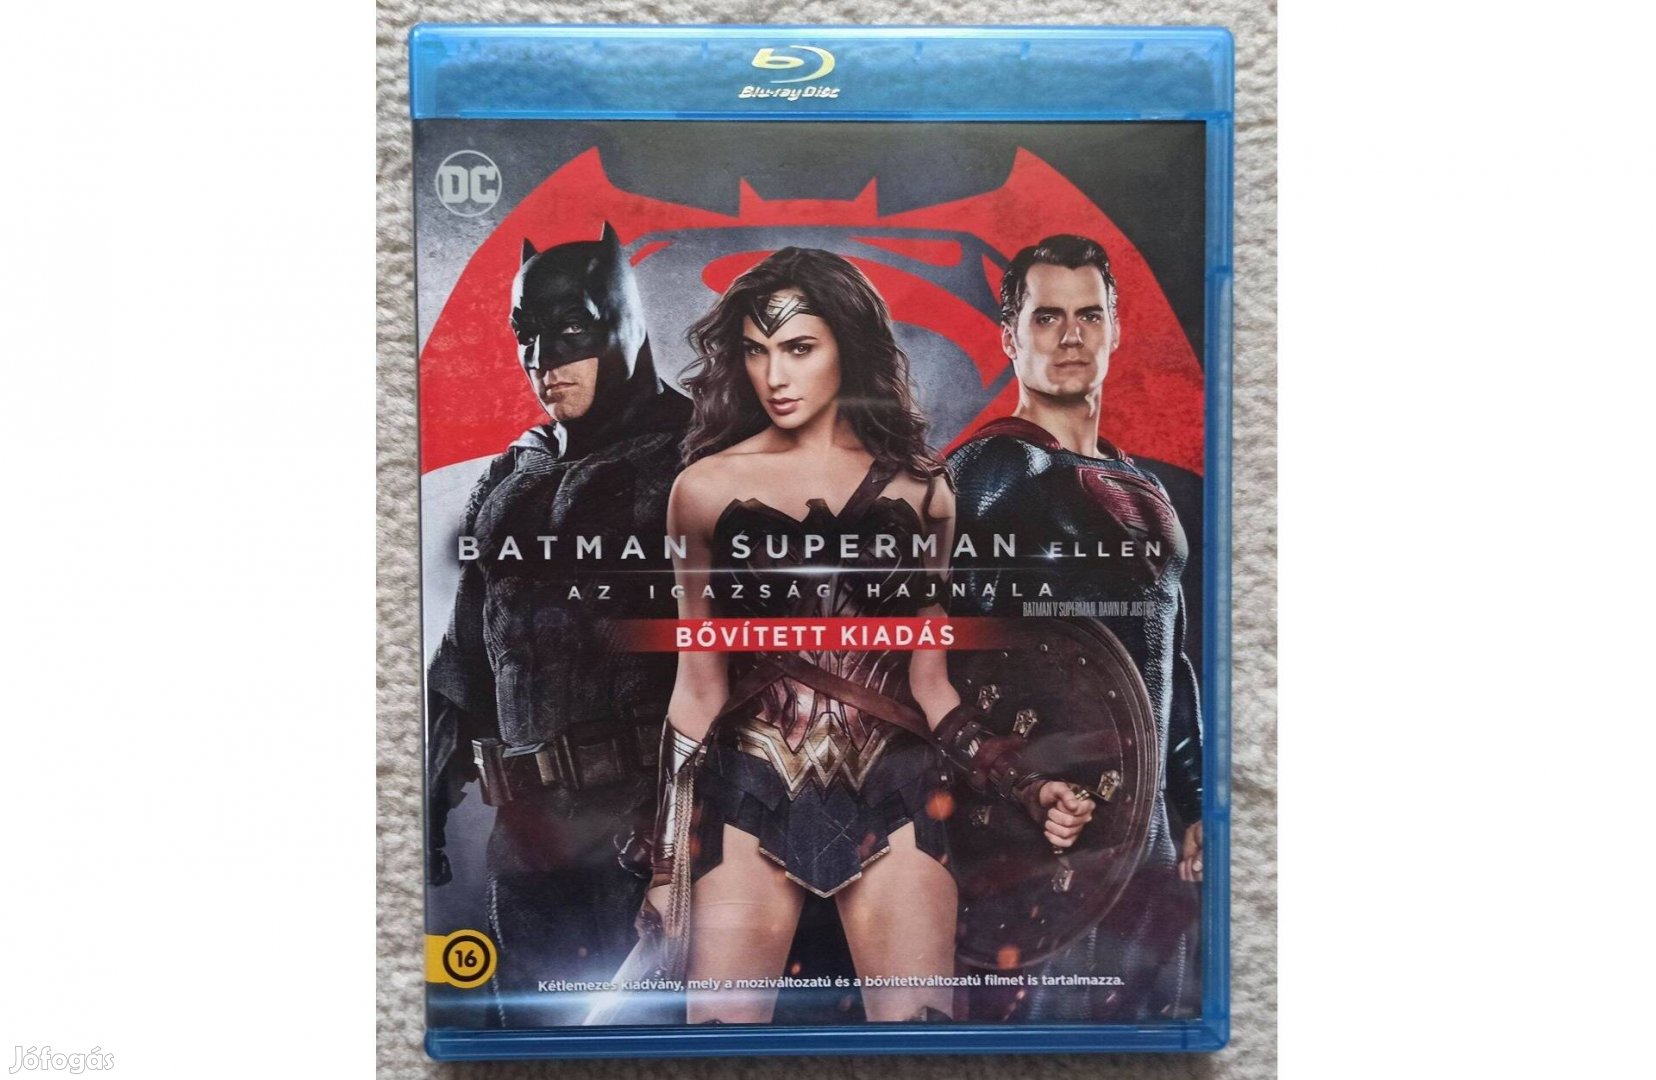 Batman Superman ellen - bővített kiadás (2 BD) blu-ray blu ray film